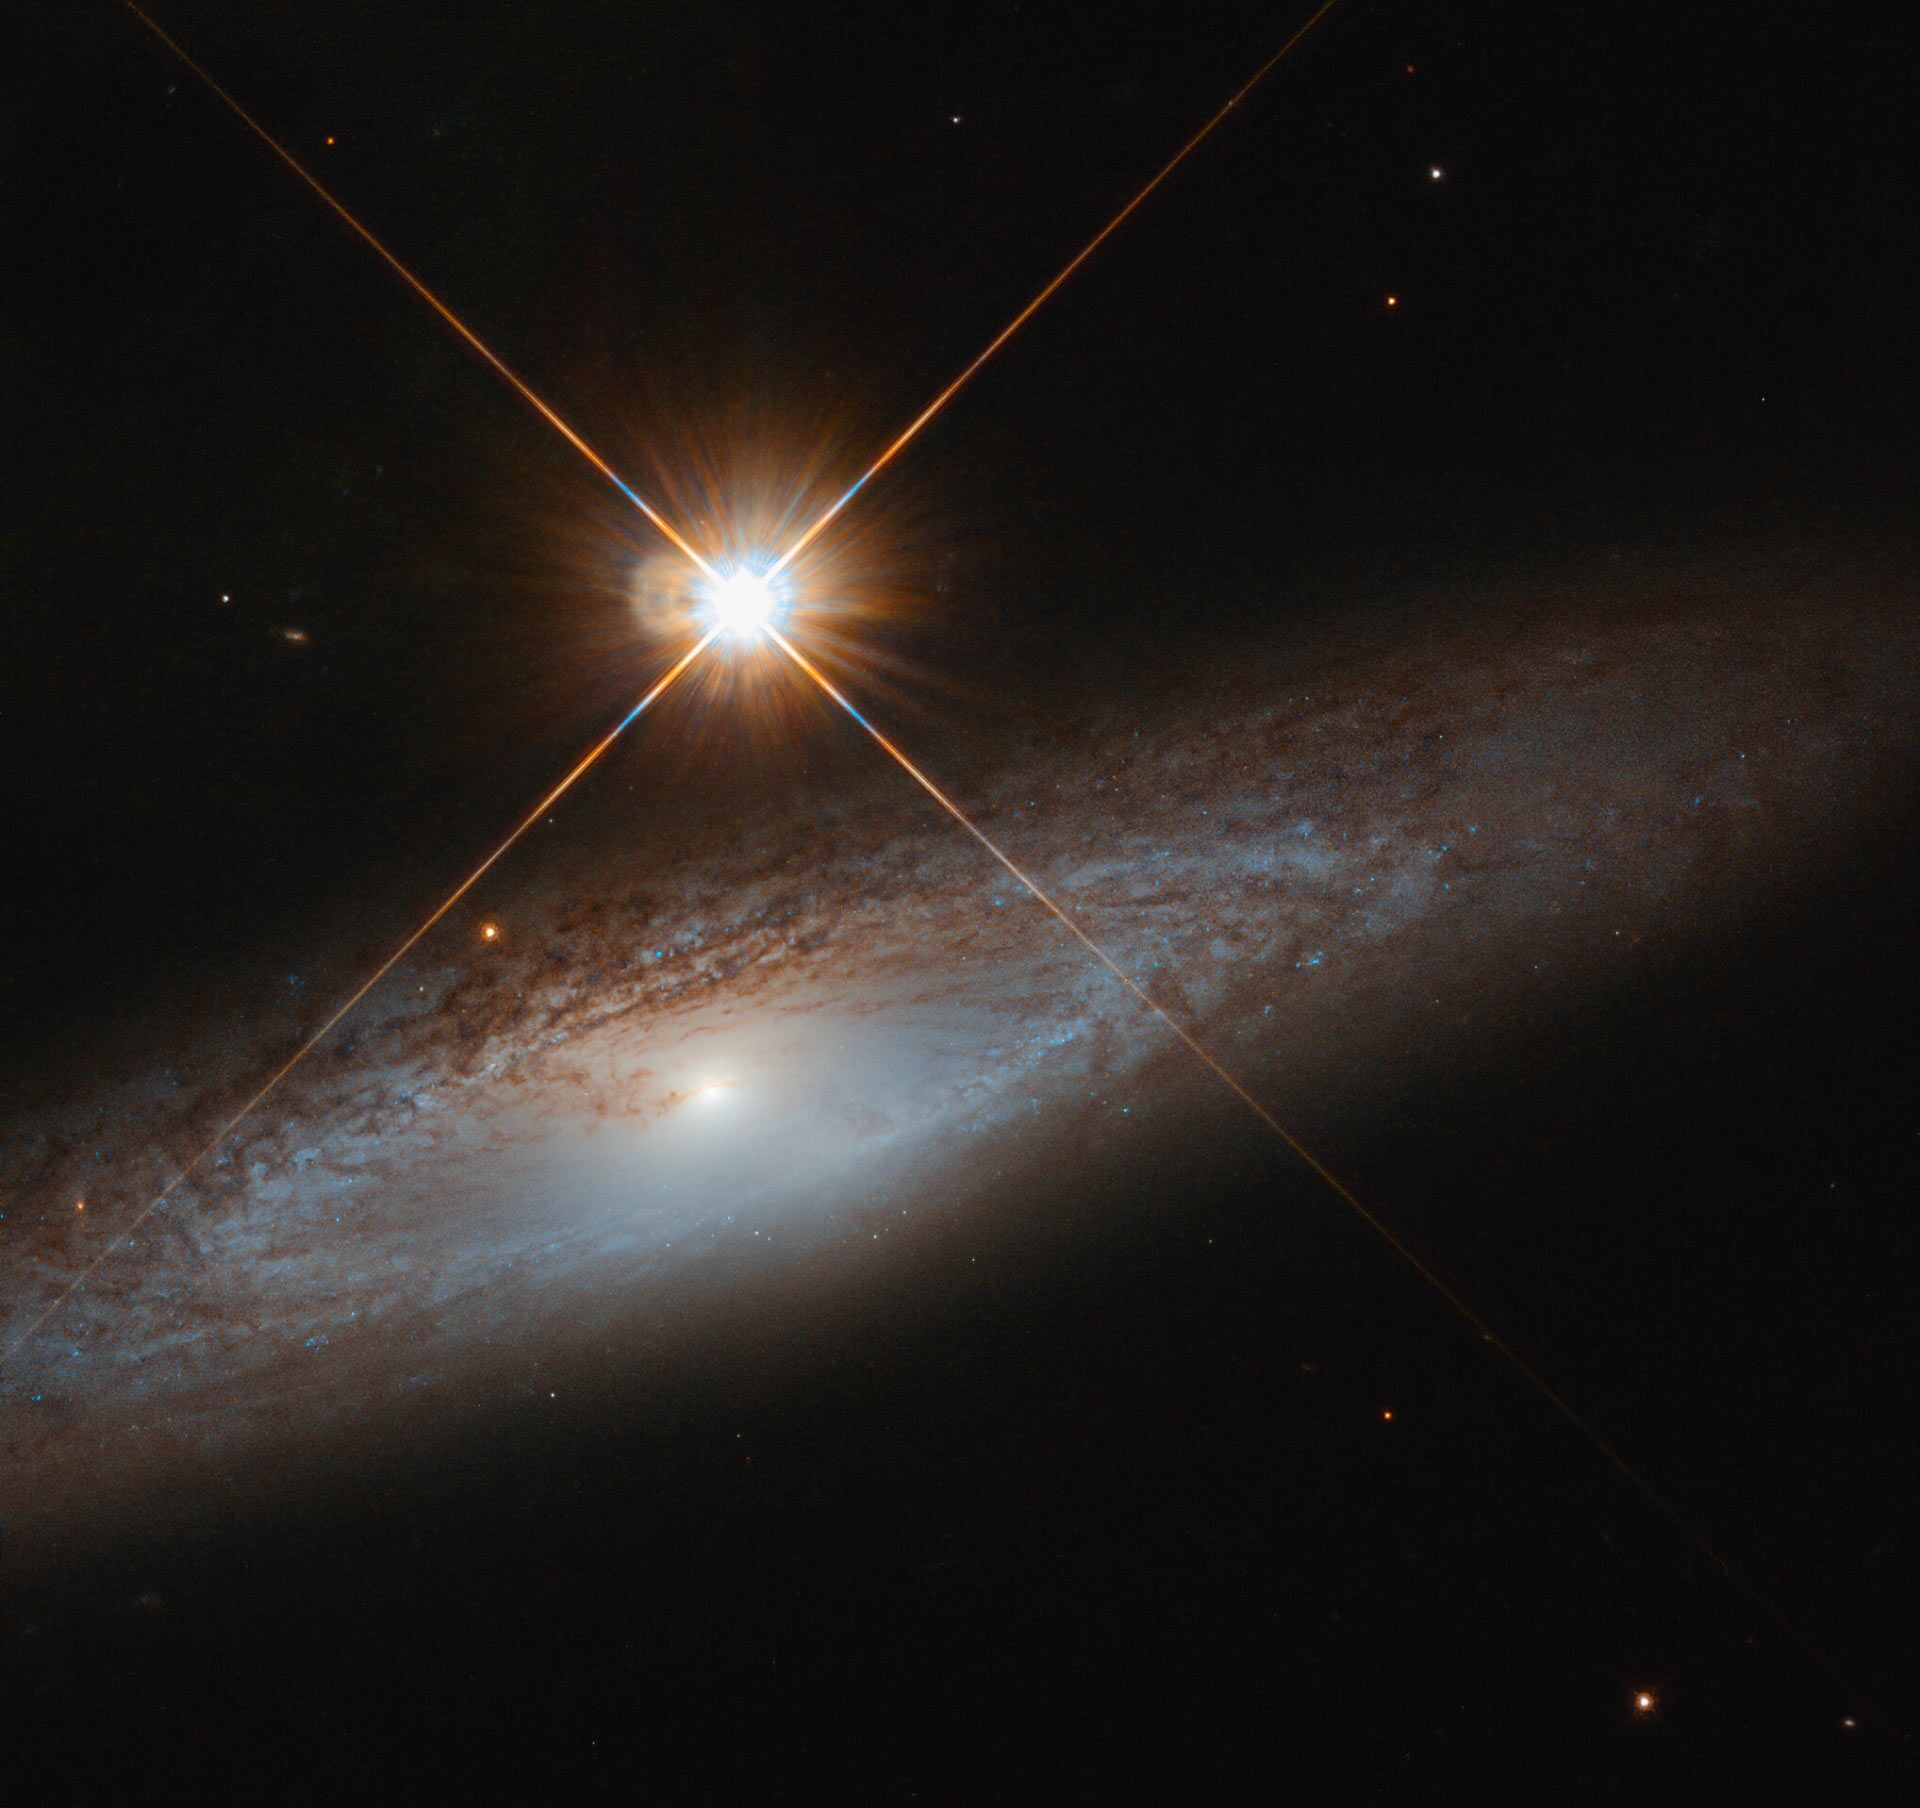 Telescópio Hubble registra imagem de galáxia espiral com gigante estrela brilhante ao lado (FOTO) - Sputnik Brasil, 1920, 02.02.2021